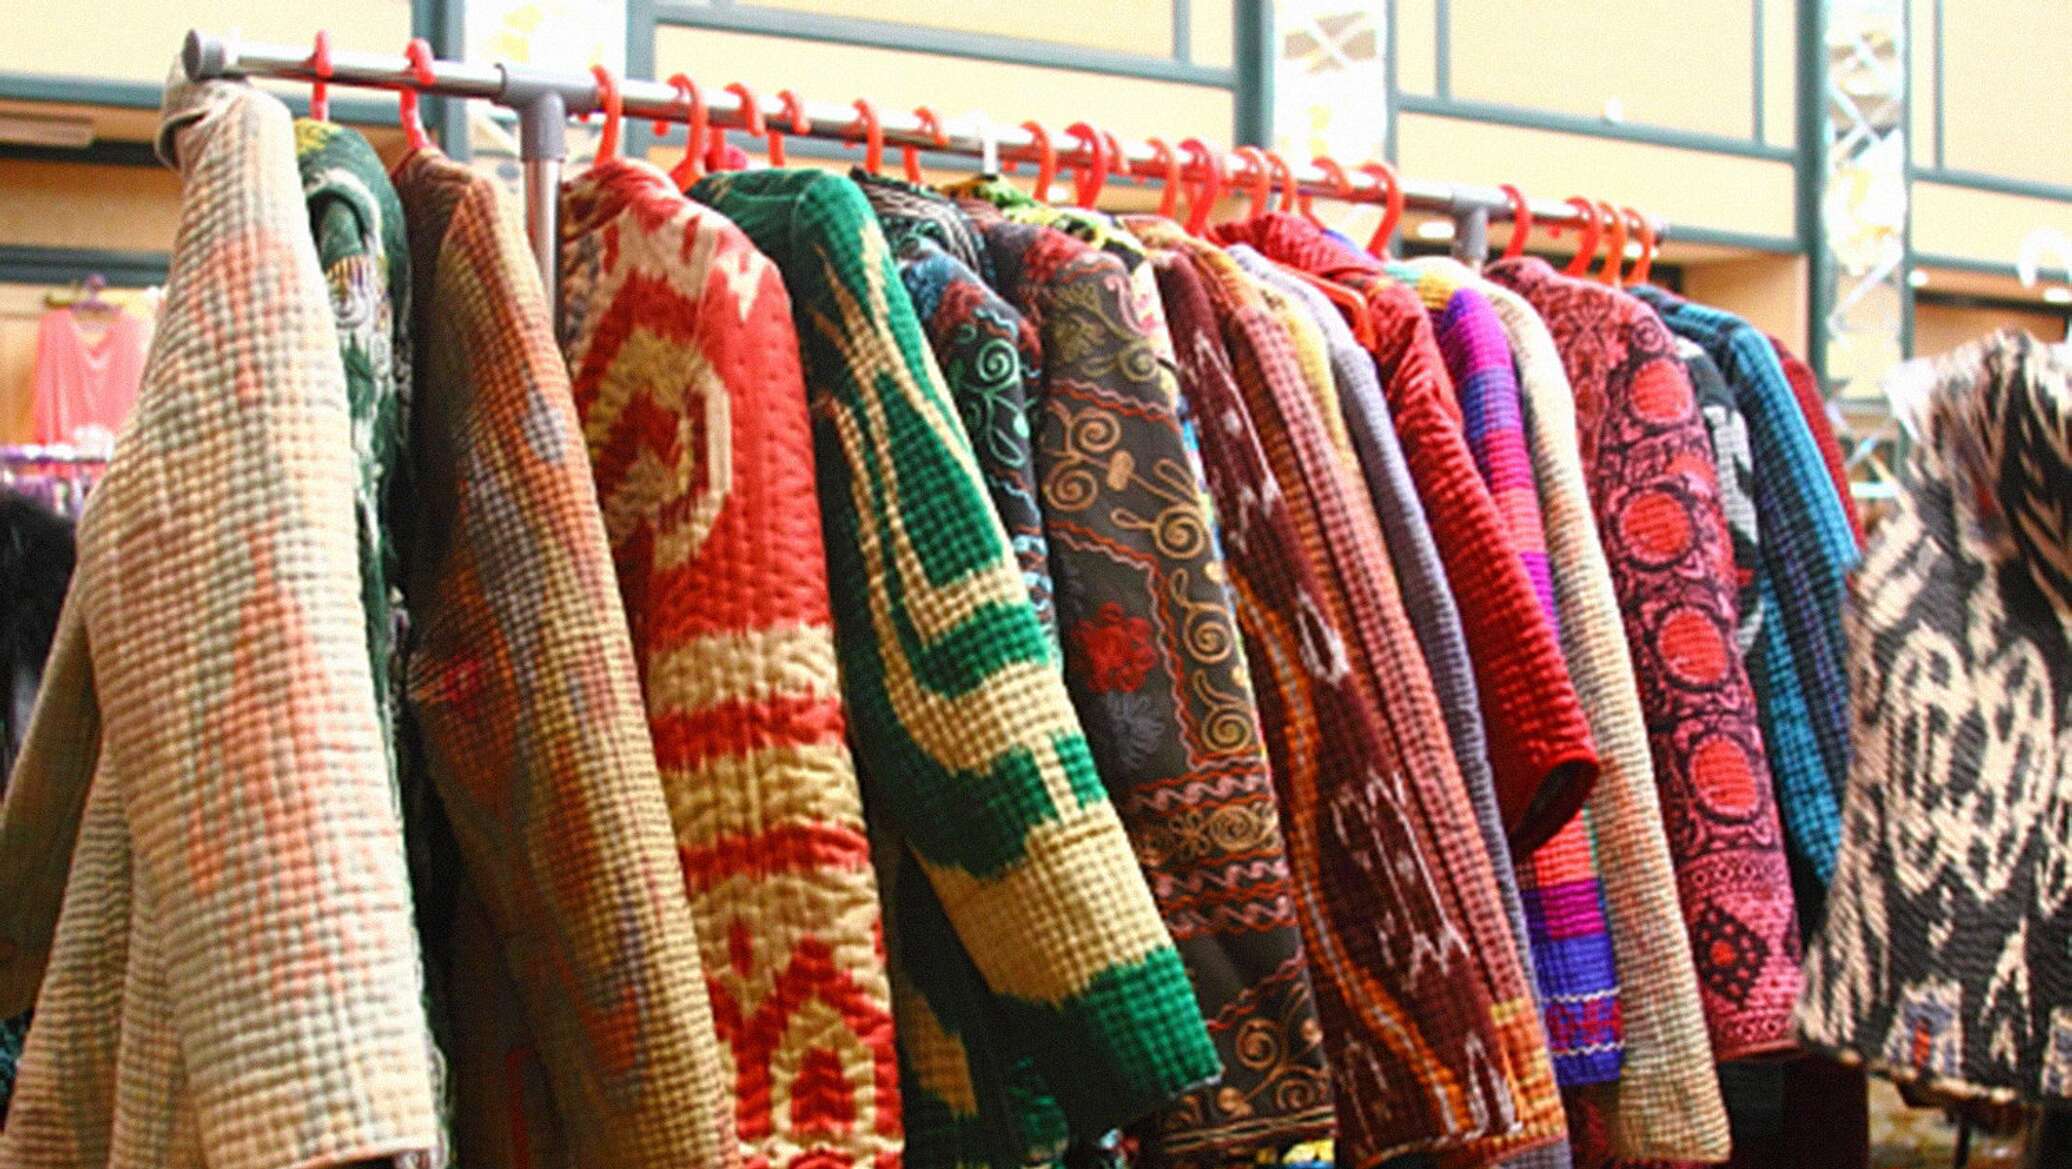 Узбекские товары. Узбекский трикотаж. Текстильные изделия Узбекистана. Киргизский трикотаж. Узбекские ткани одежда.